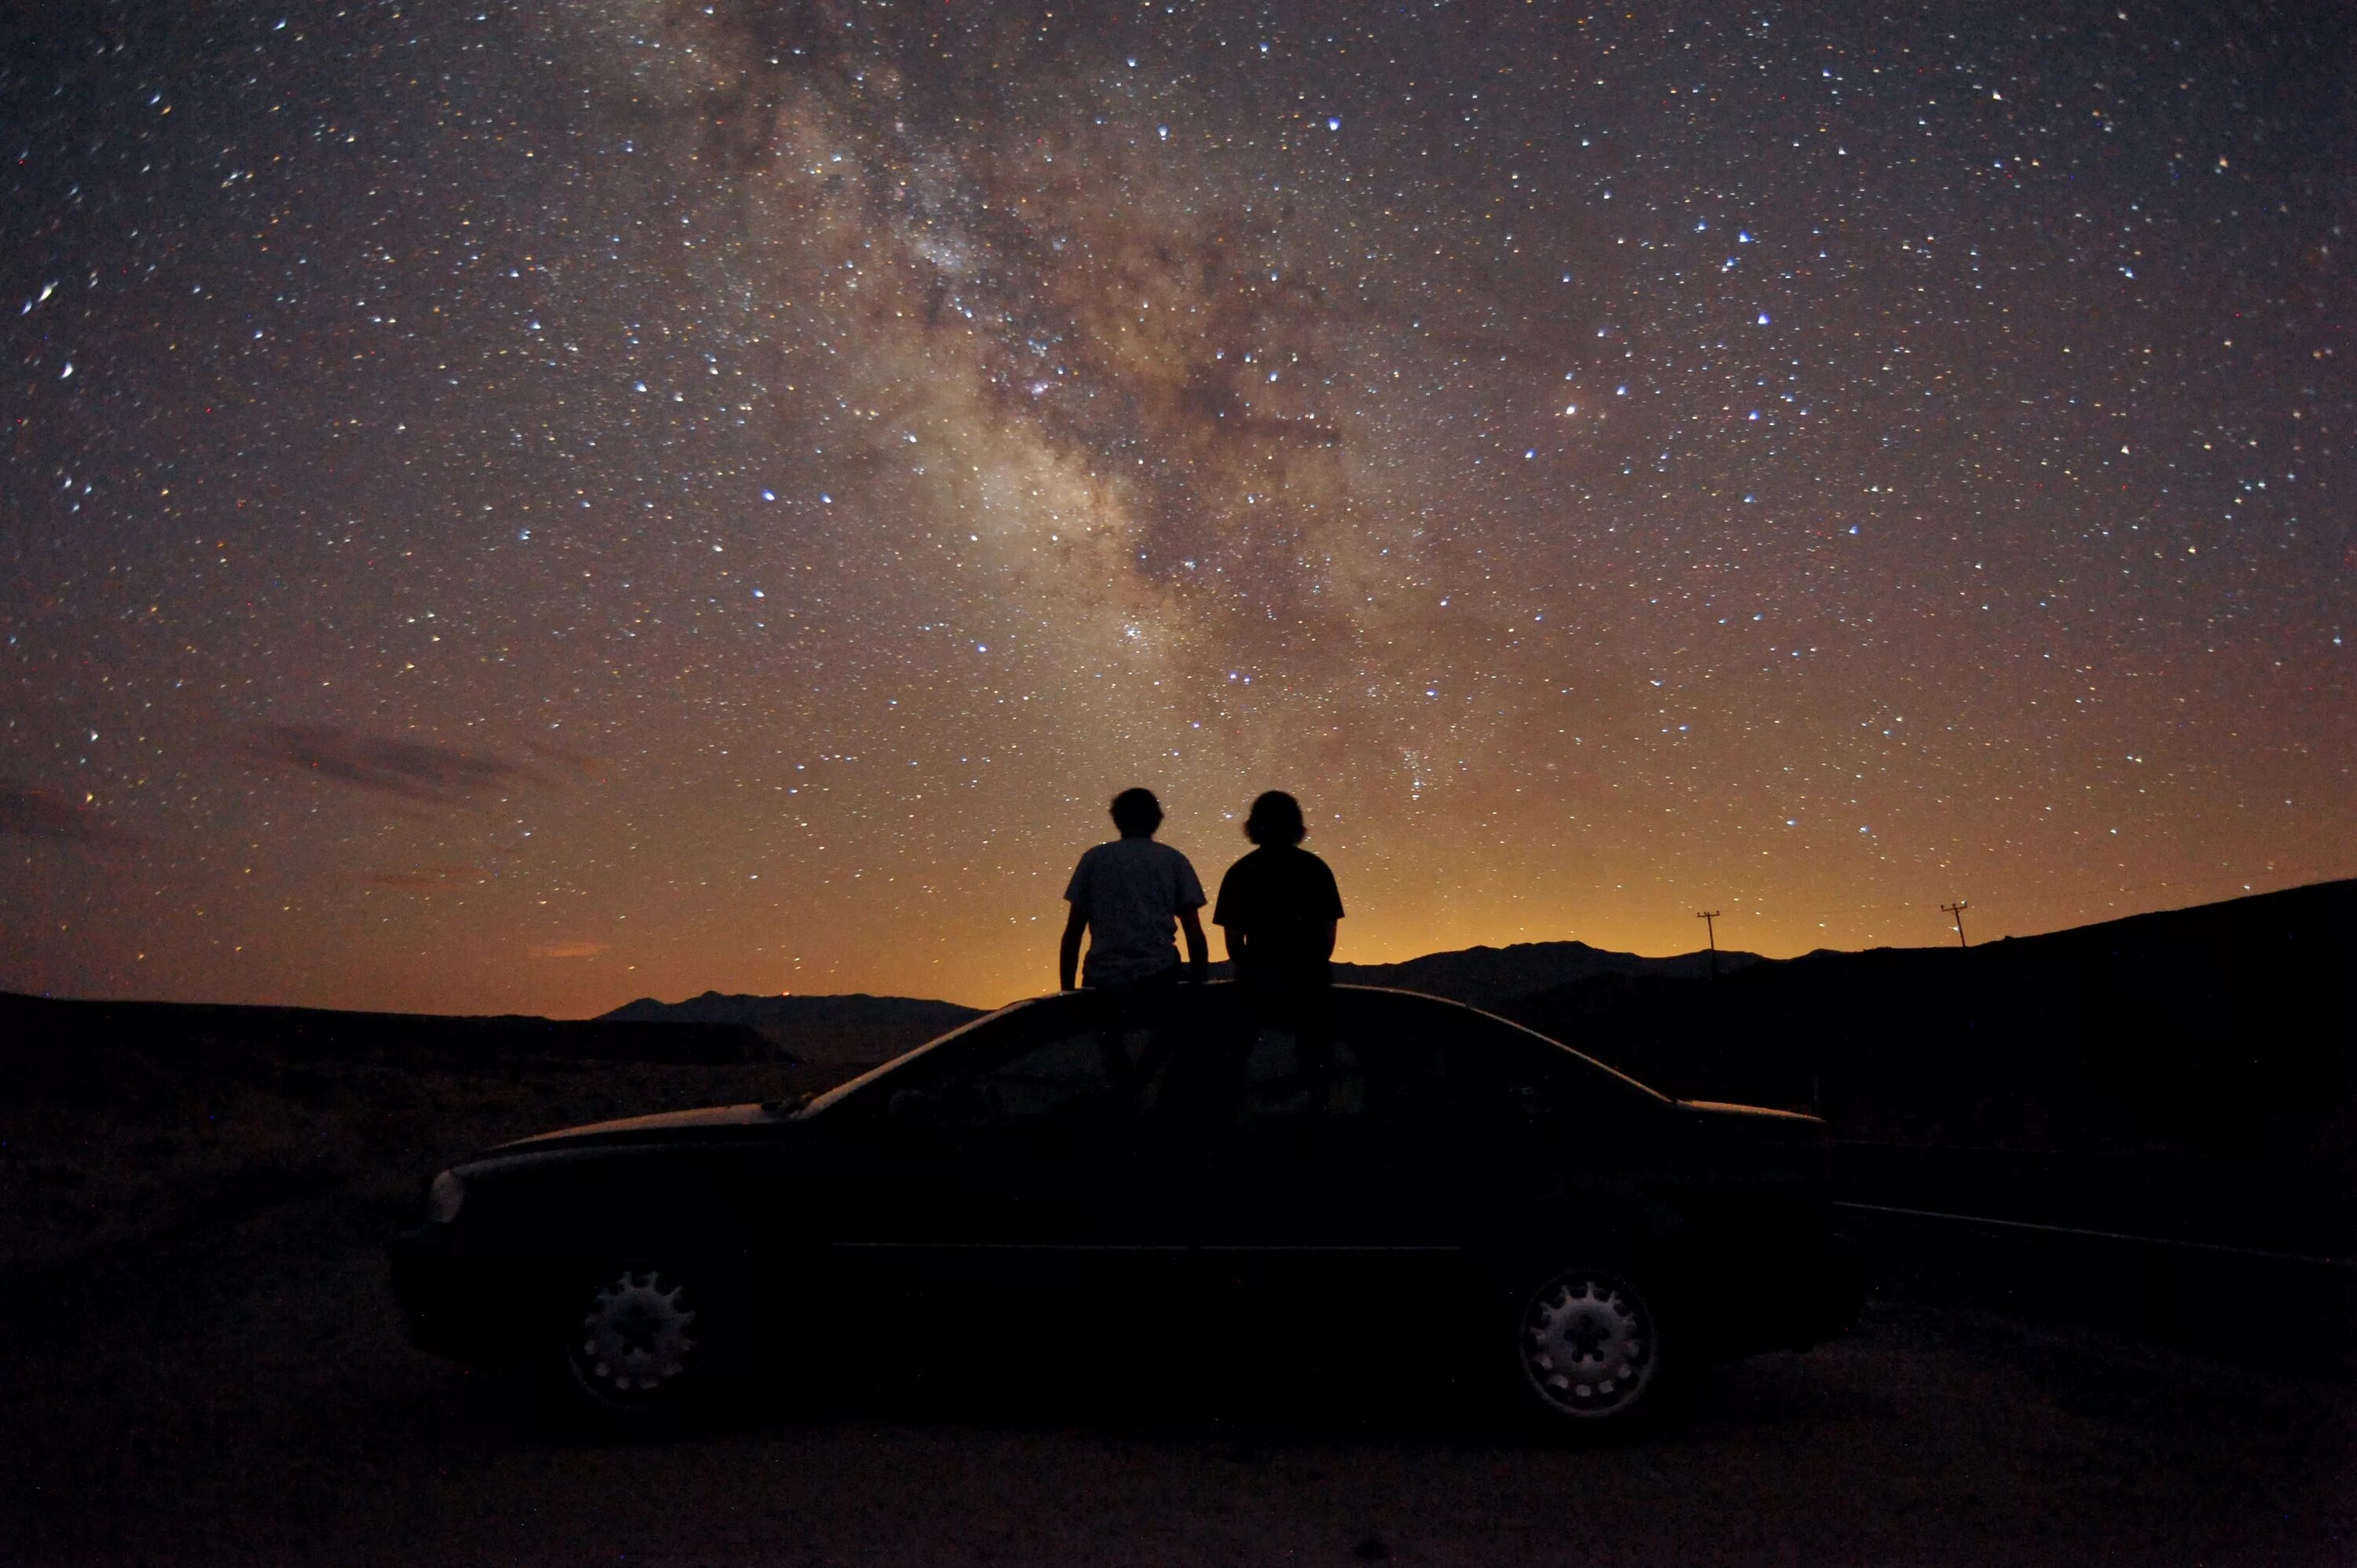 1 ночь людей. Звездное небо в машине. Человек под звездным небом. Пара ночью. Пара в машине ночью.